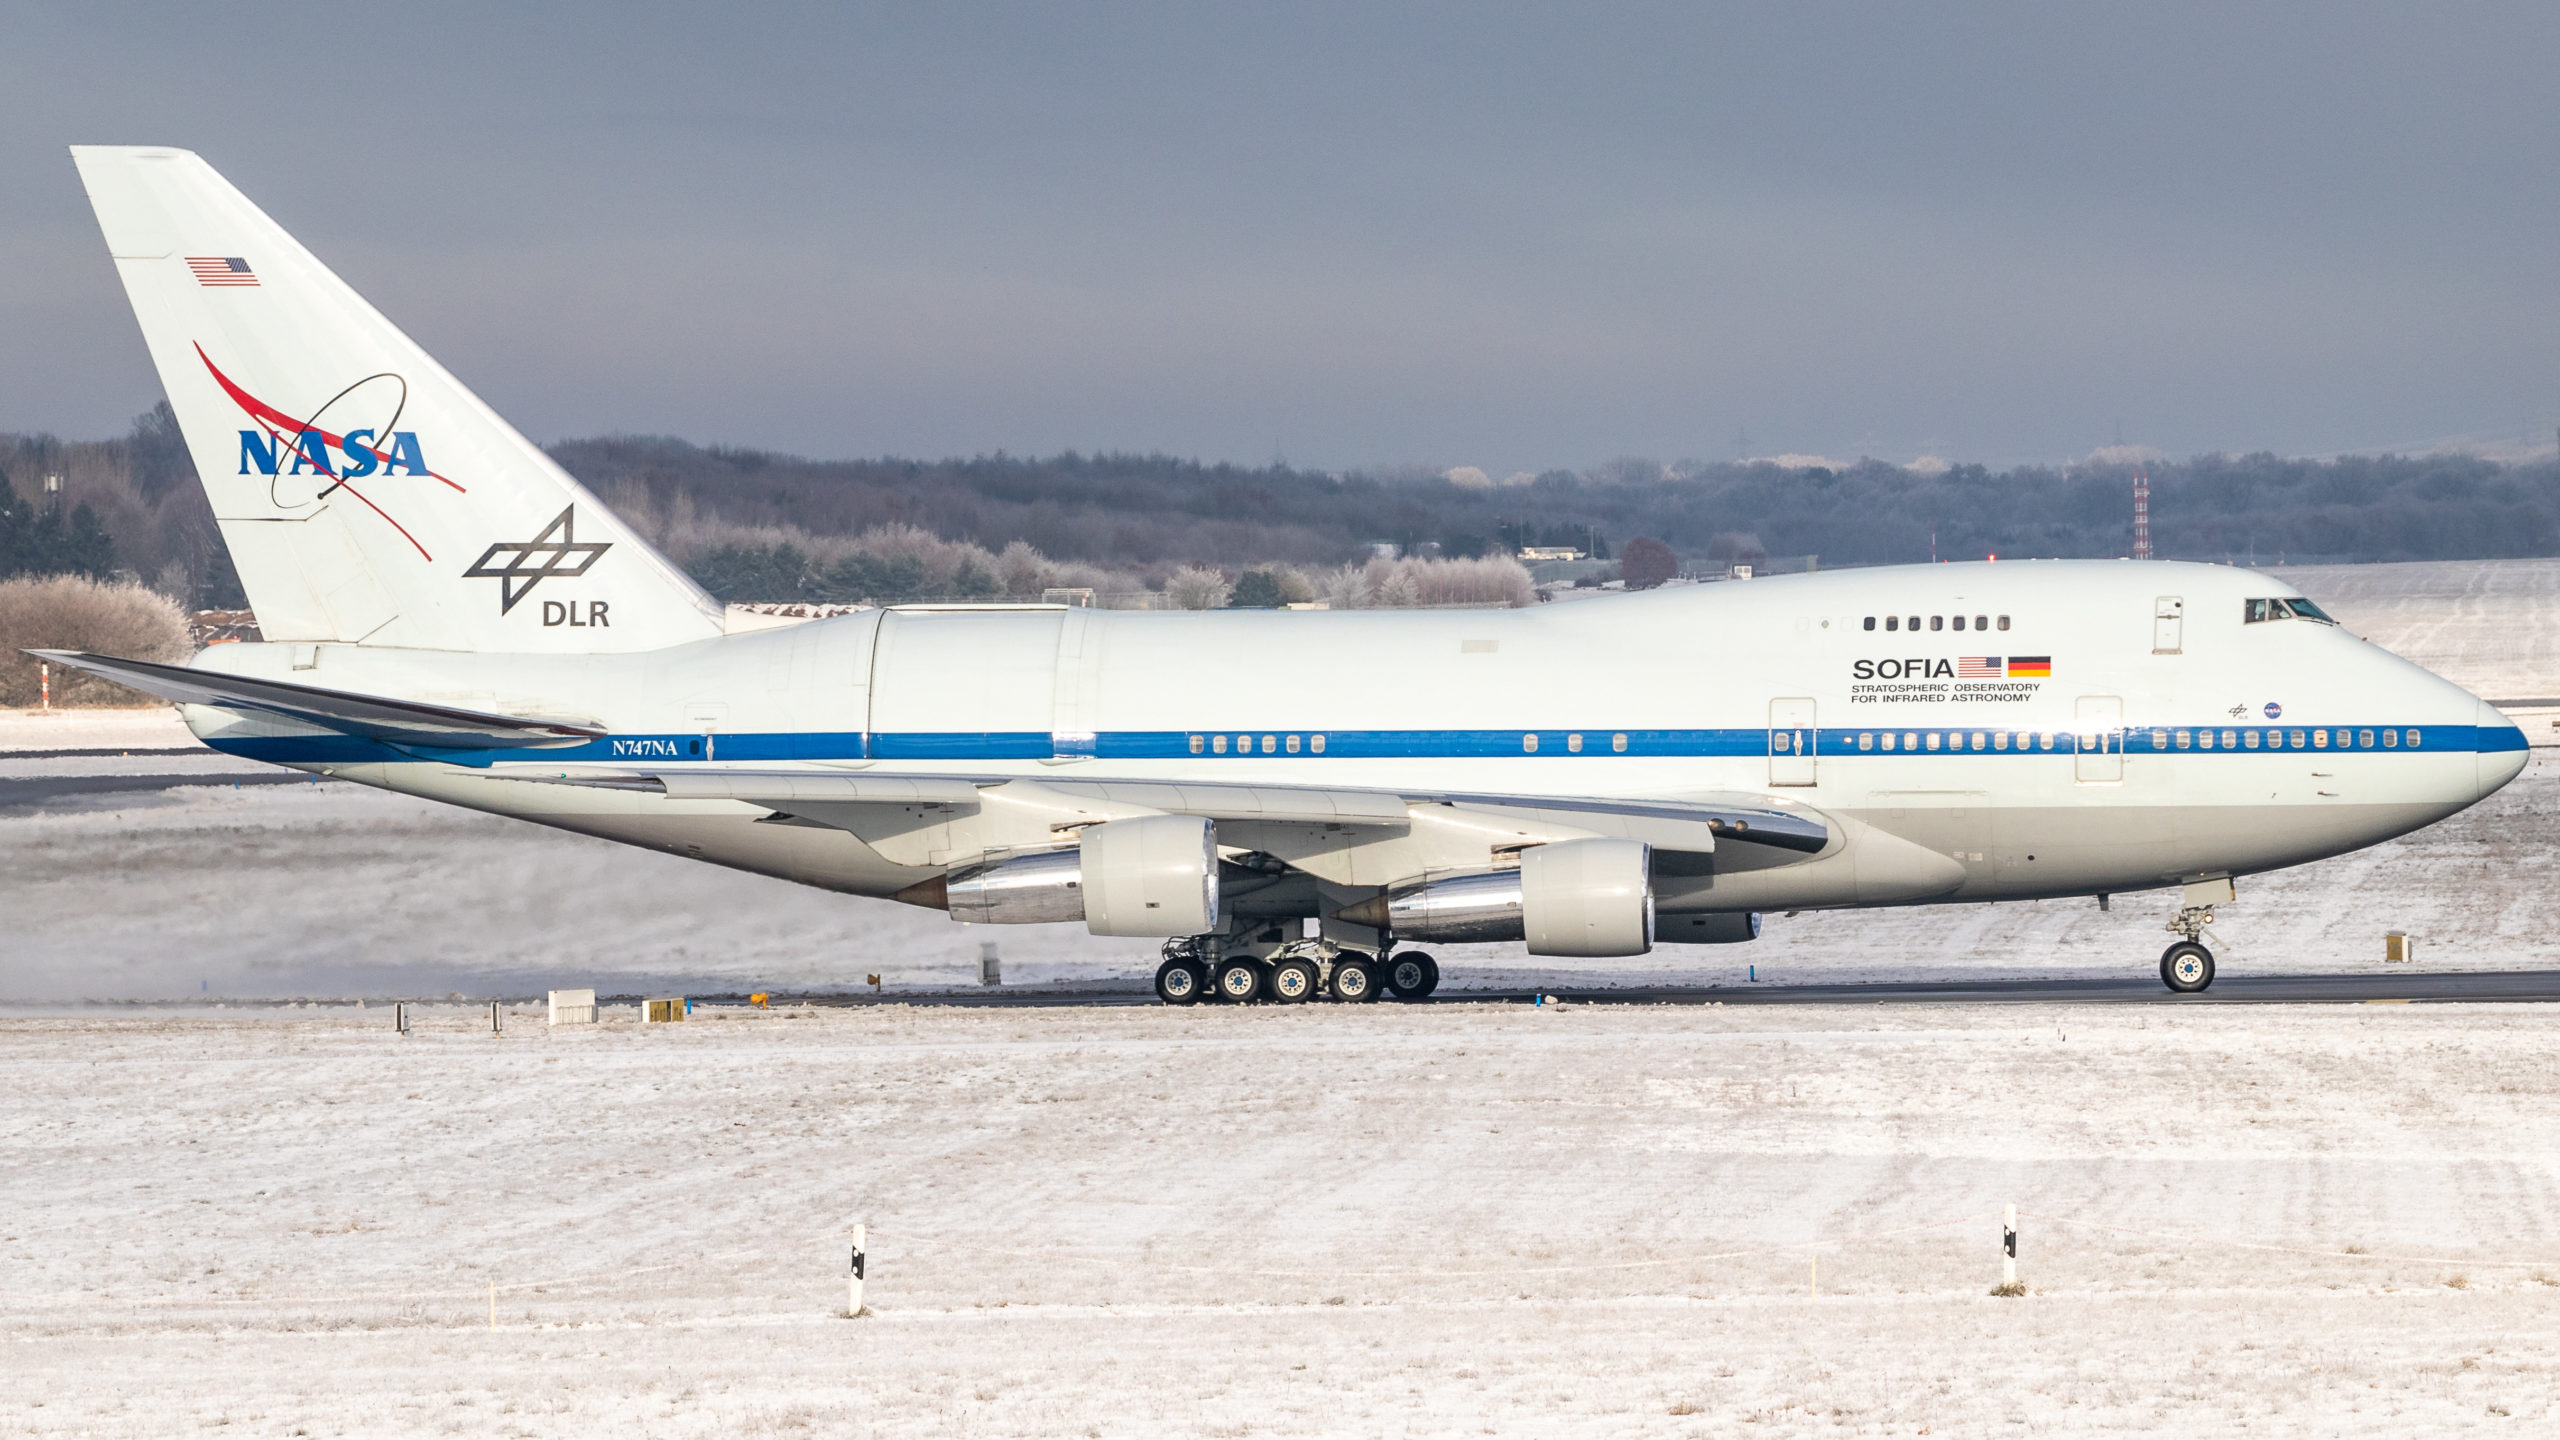 Das Bild ist Ende Januar 2021 entstanden als die Sofia nach ihrer Wartung in Hamburg bei der Lufthansa Technik zu ihrem ersten Test-Flug aufbrach. Mir persönlich gefällt das Bild besonders gut, das es eine schöne Kulisse mit dem Schnee ist. Foto: Cornelius Grossmann